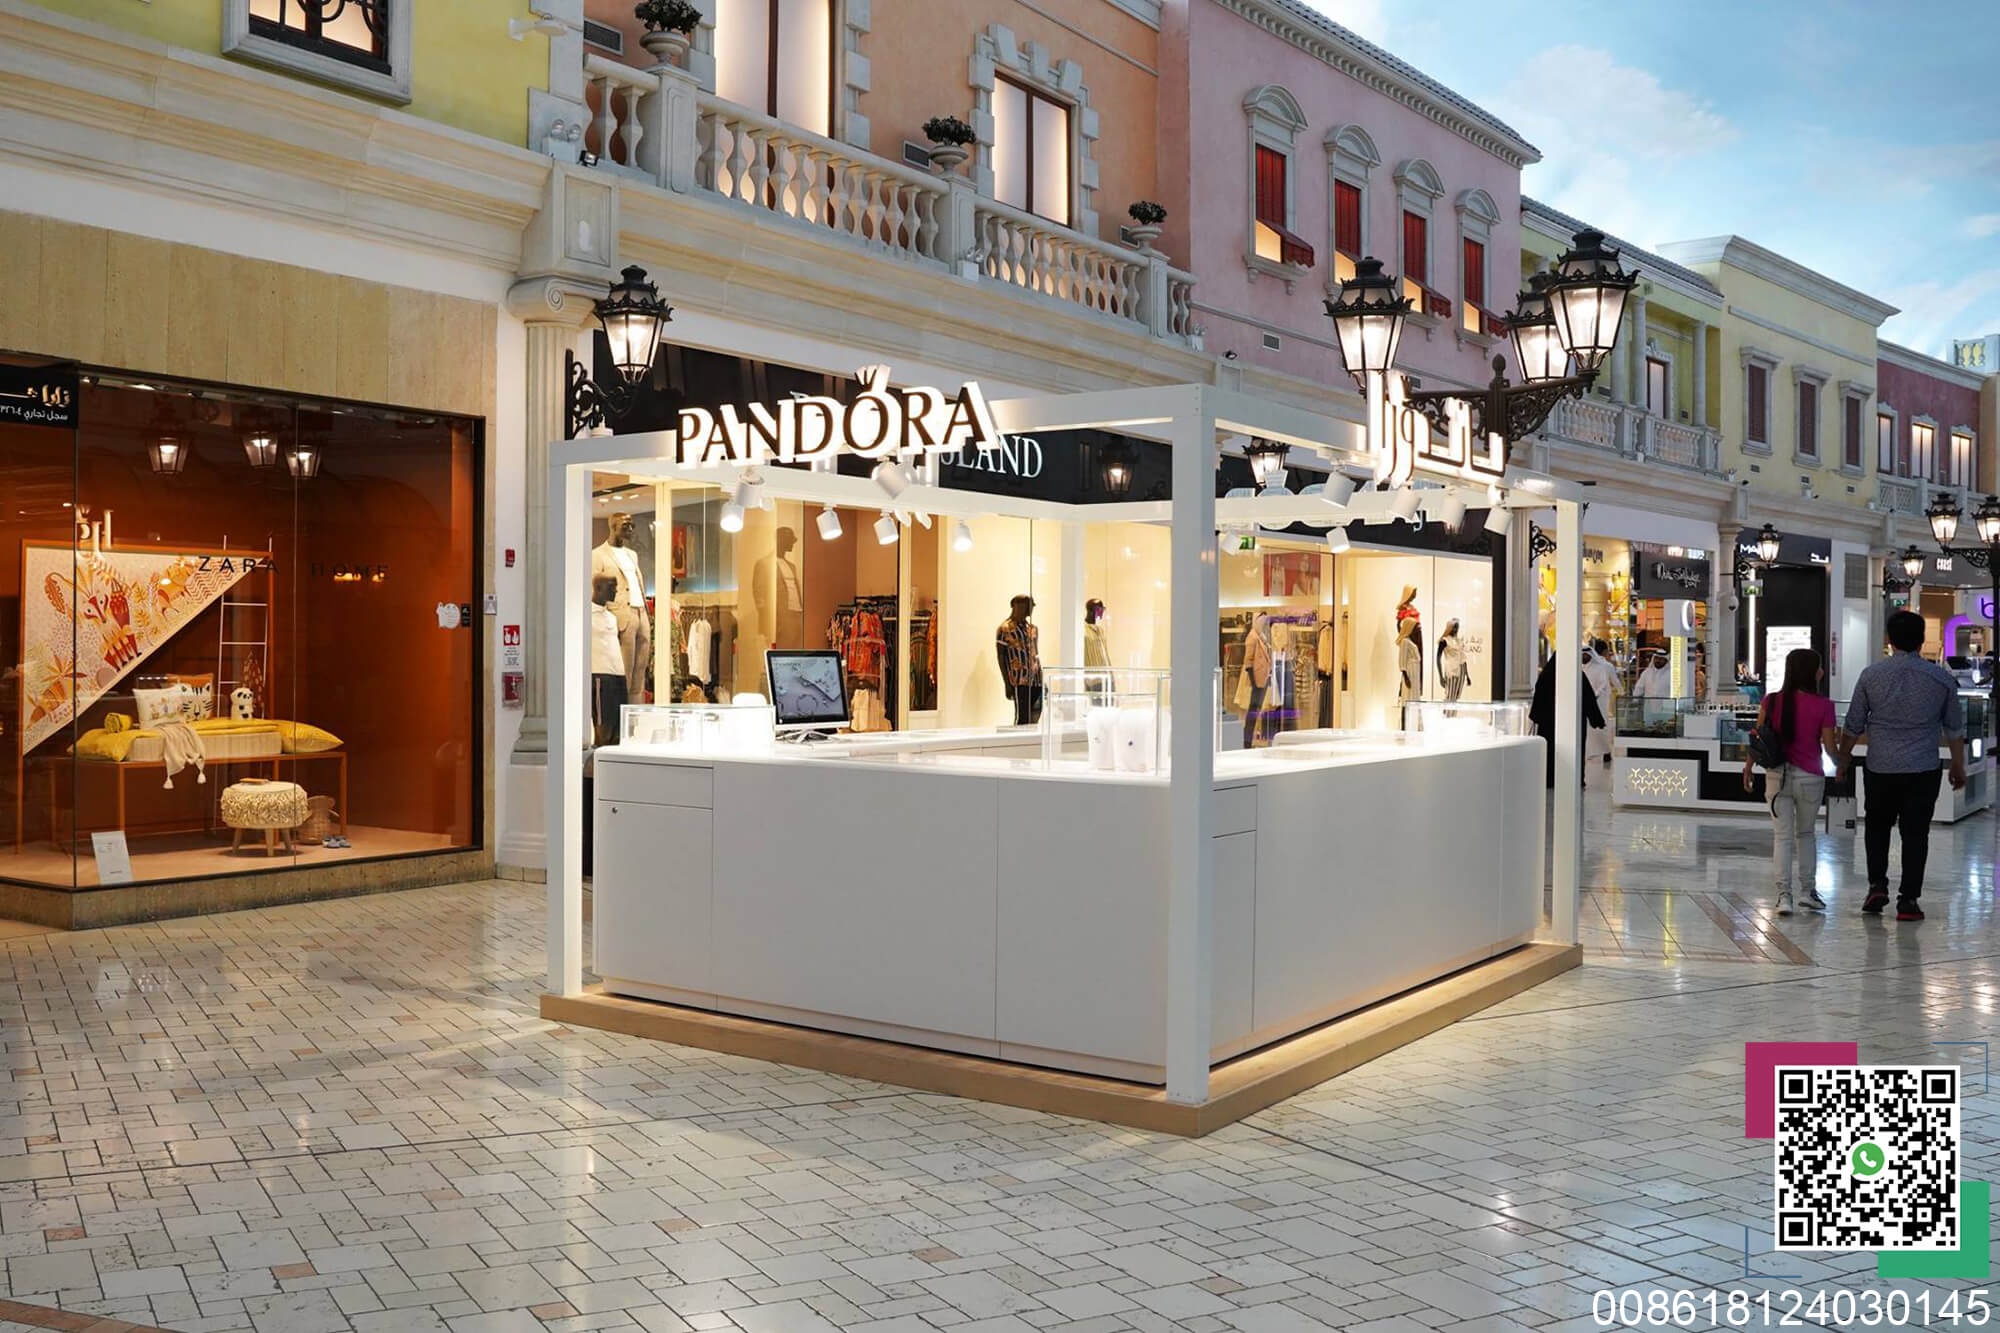 Outdoor Pandora Jewelry Kiosk